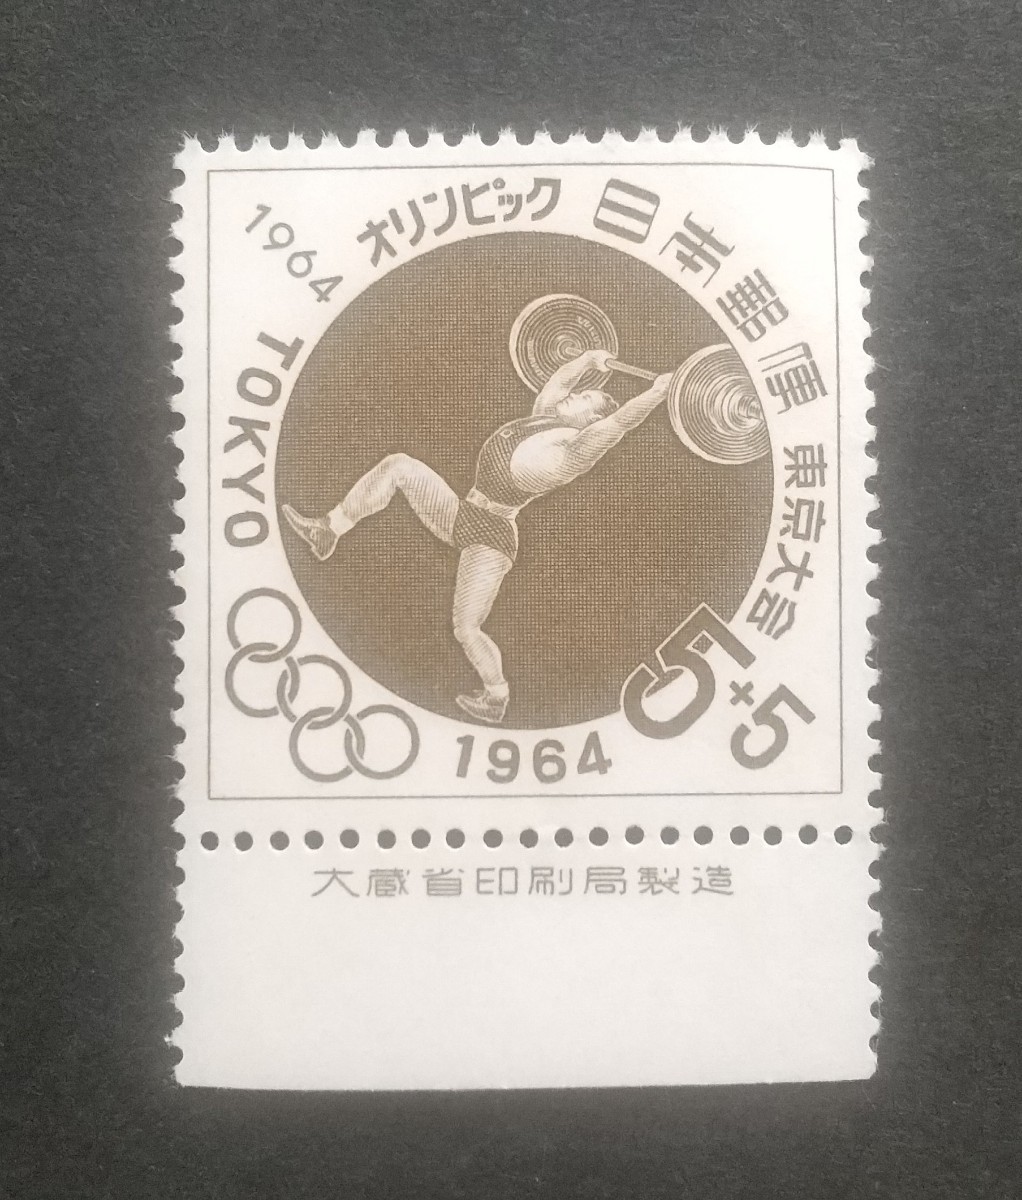 記念切手 東京オリンピック 寄附金付重量挙げ 1964 大蔵省銘板付き 未使用品 (ST-10)_画像1